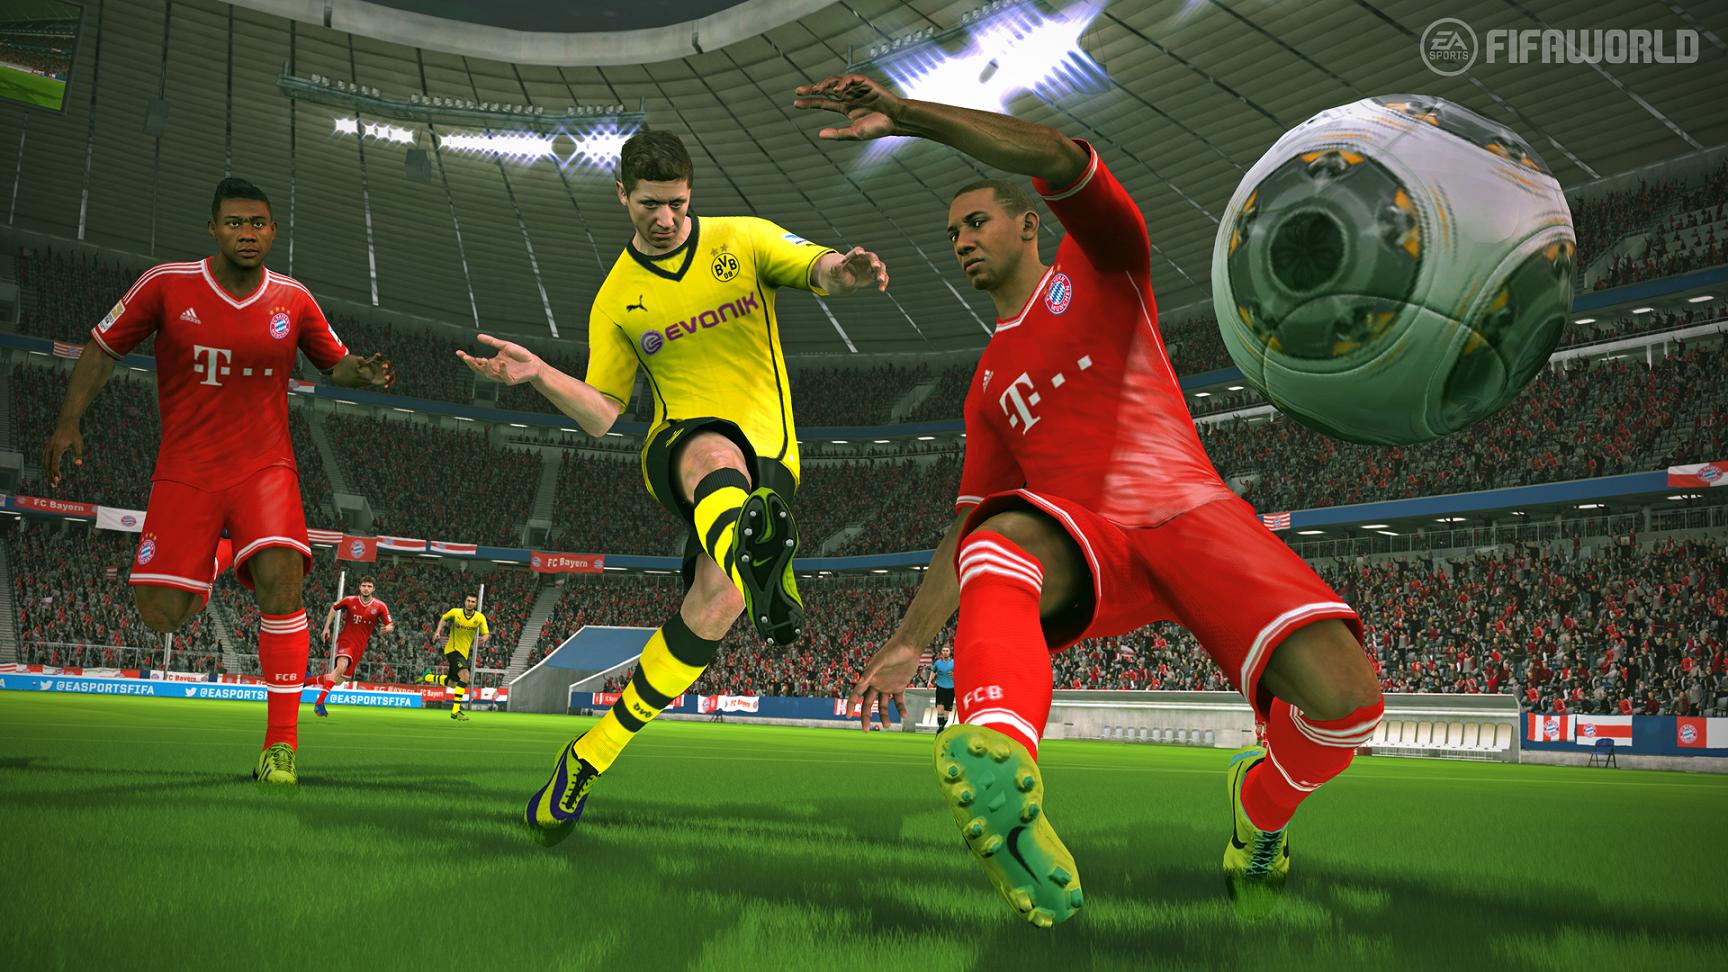 FIFA World – Ultimate Team gratuit et disponible sur PC